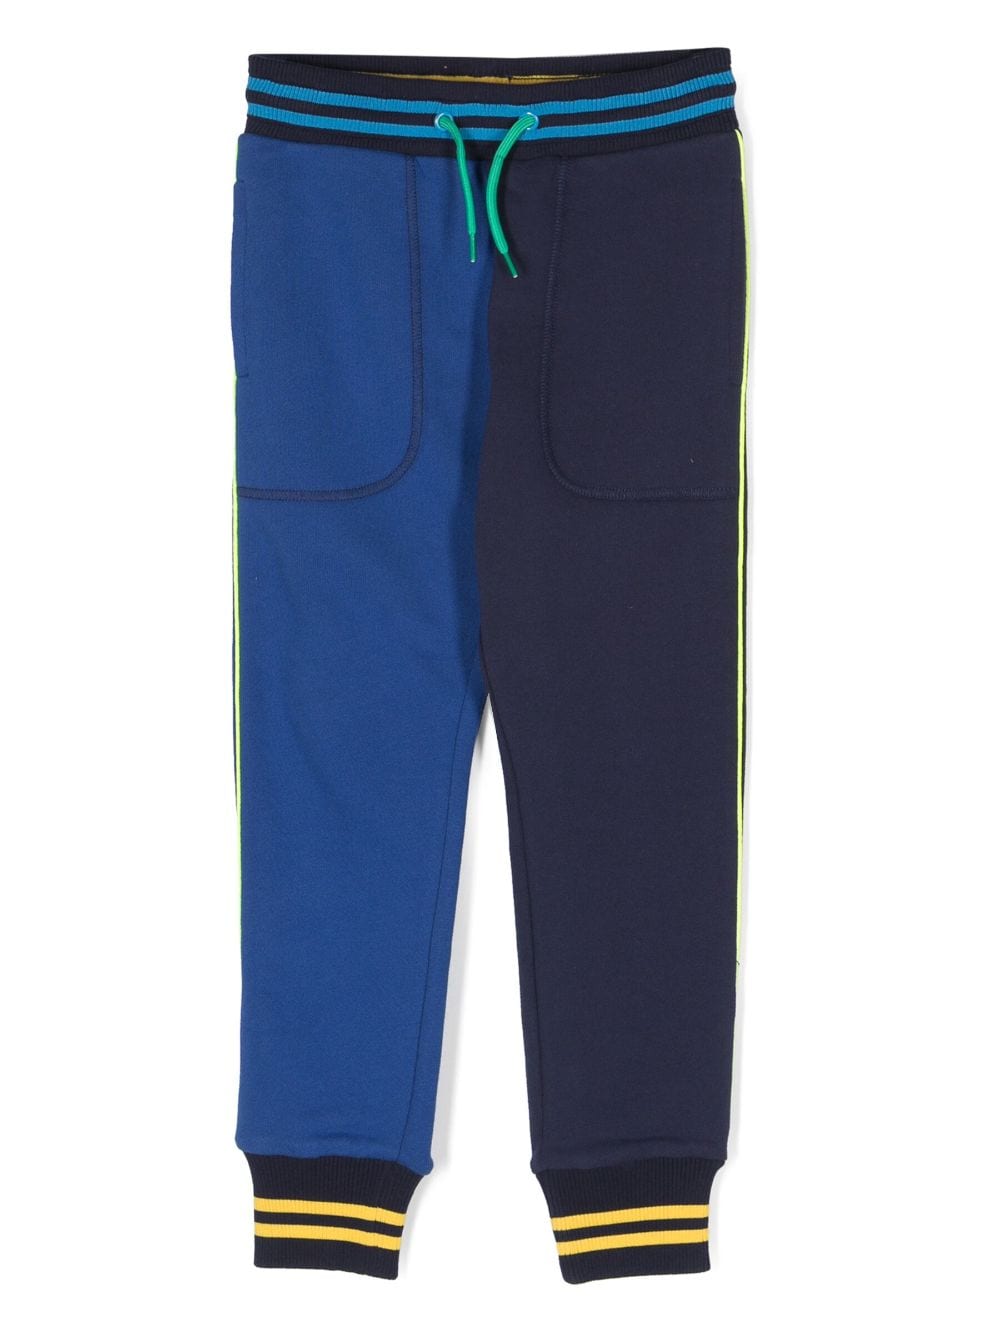 Image 1 of Marc Jacobs Kids pants con diseño color block